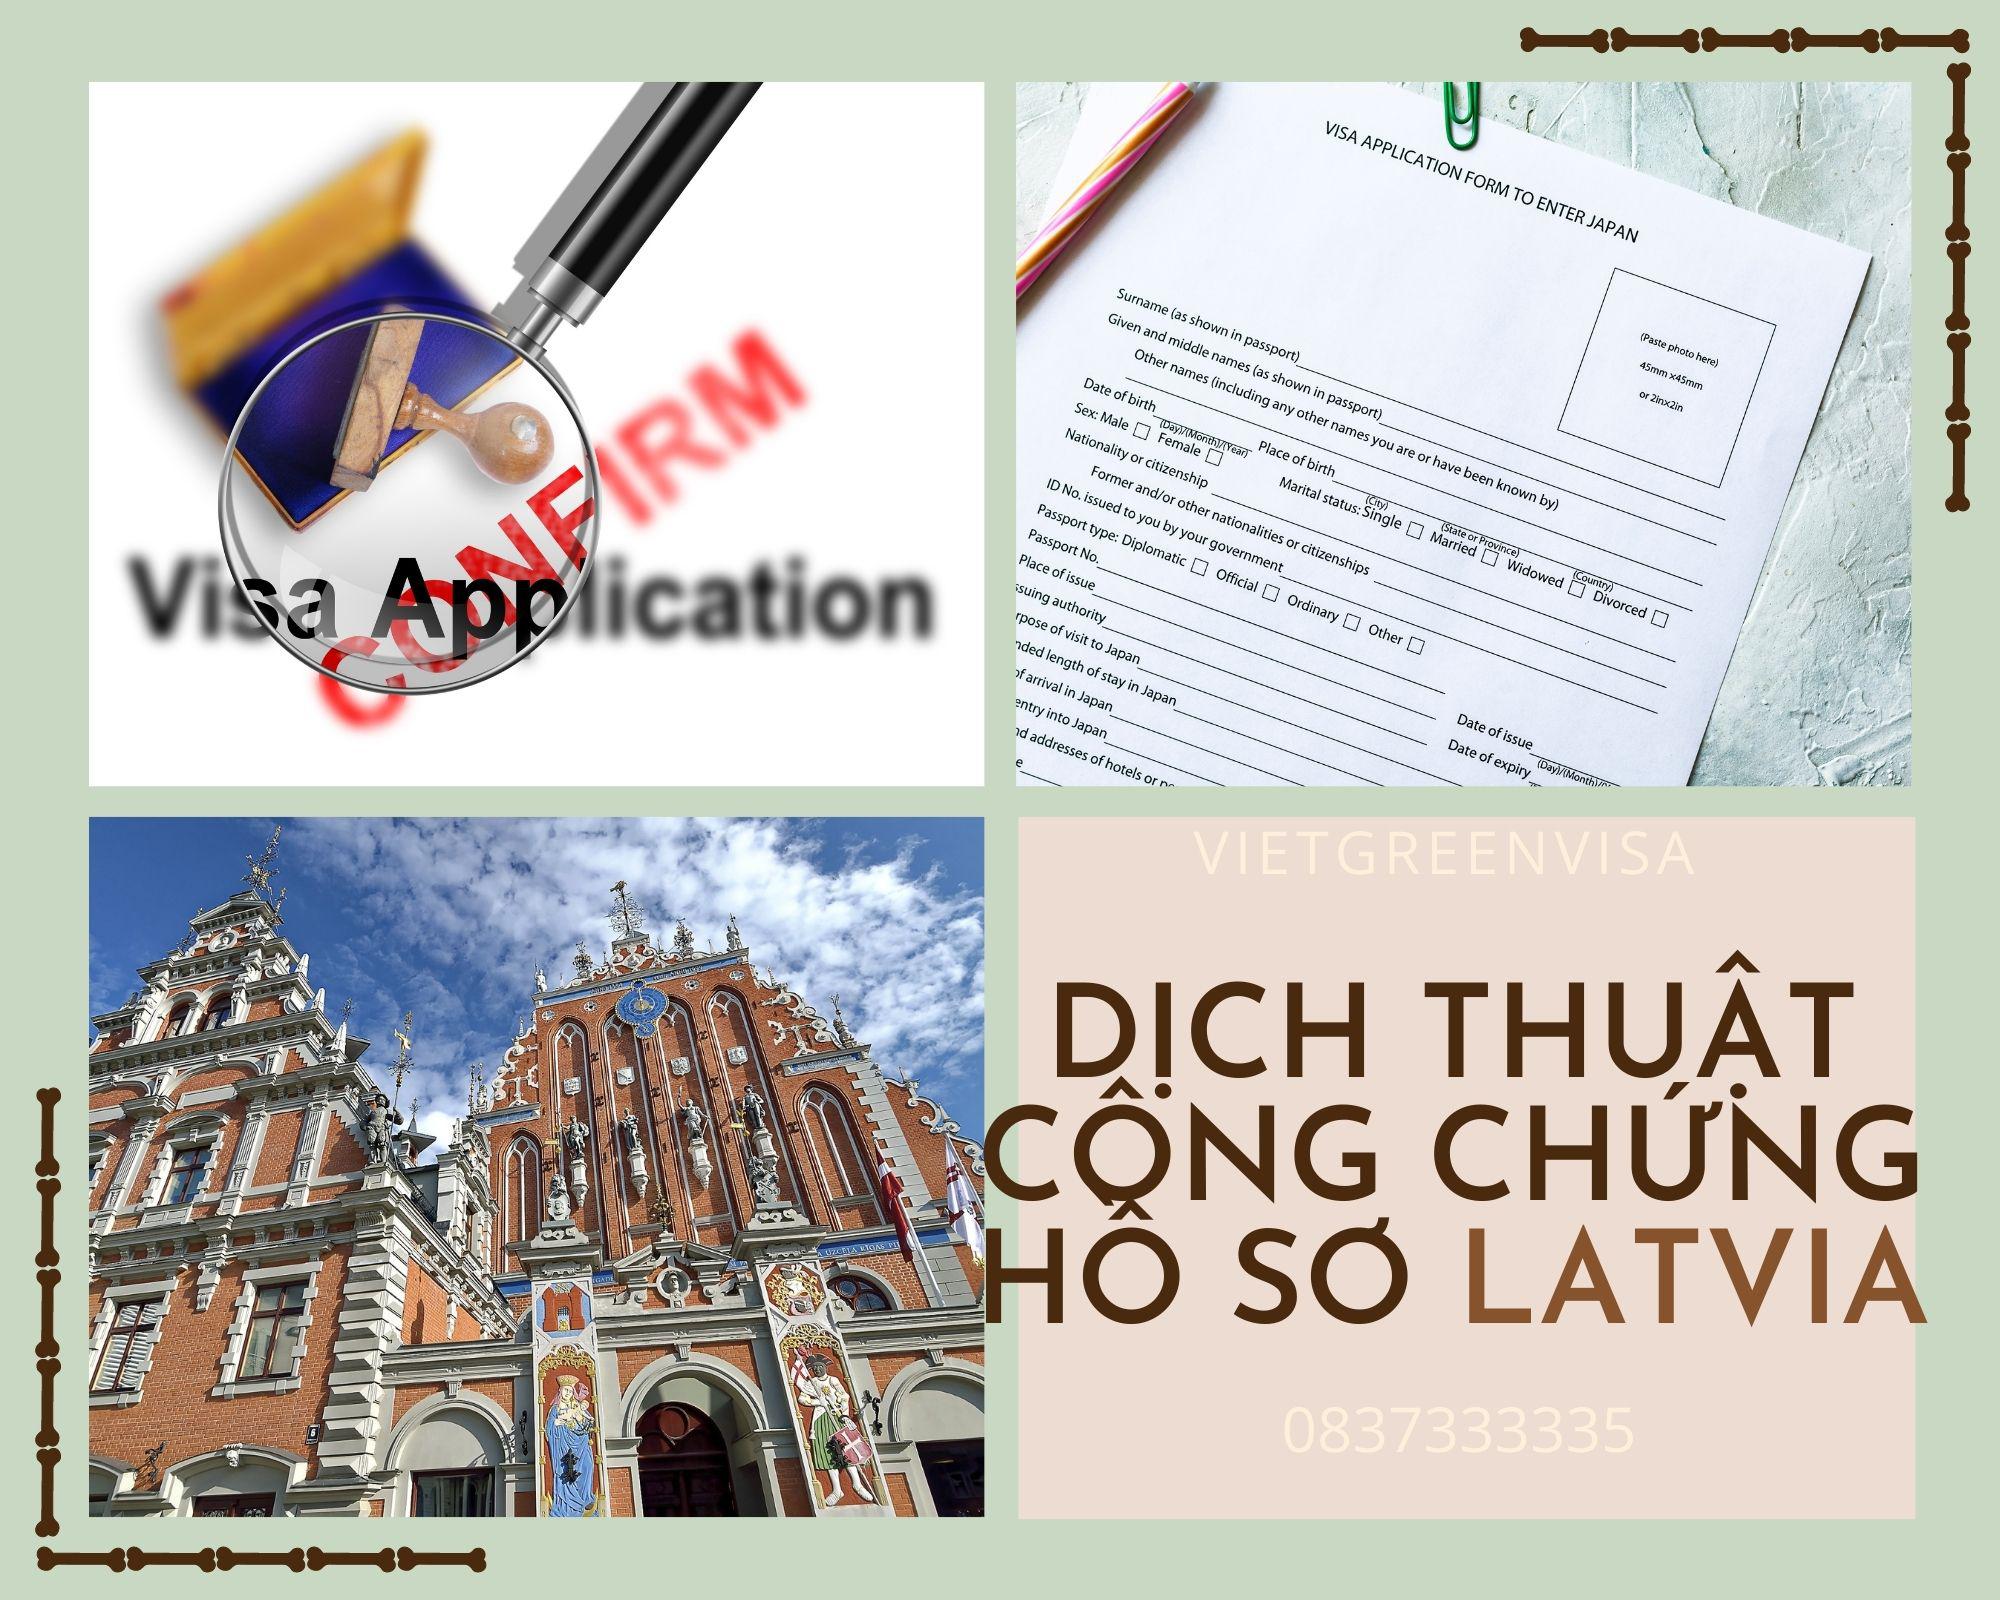 Dịch thuật công chứng hồ sơ visa du lịch Latvia nhanh rẻ